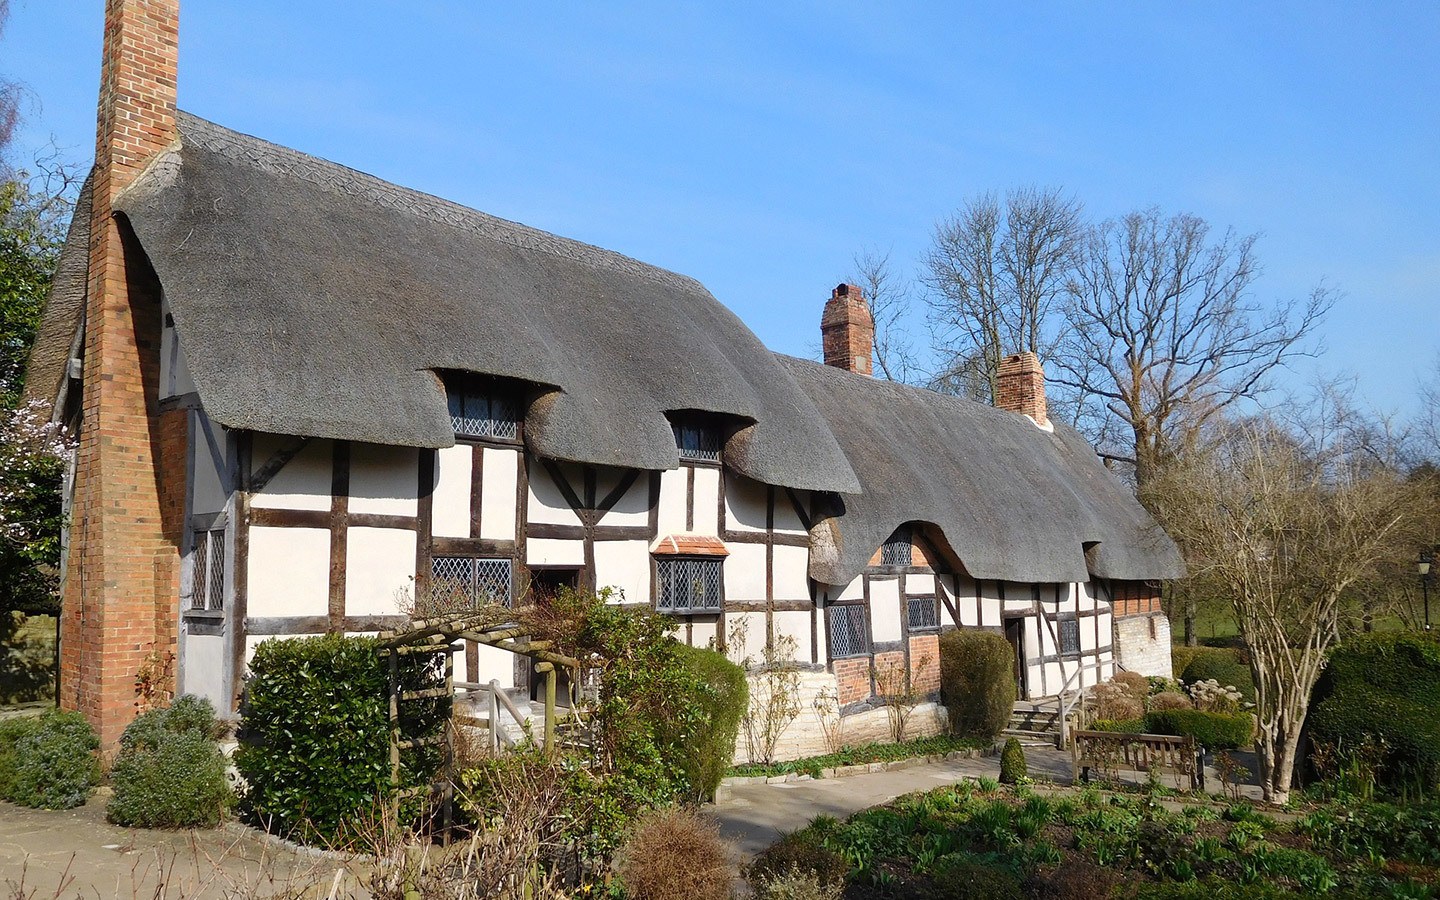 Anne Hathaway's Cottage in Stratford-upon-Avon, England